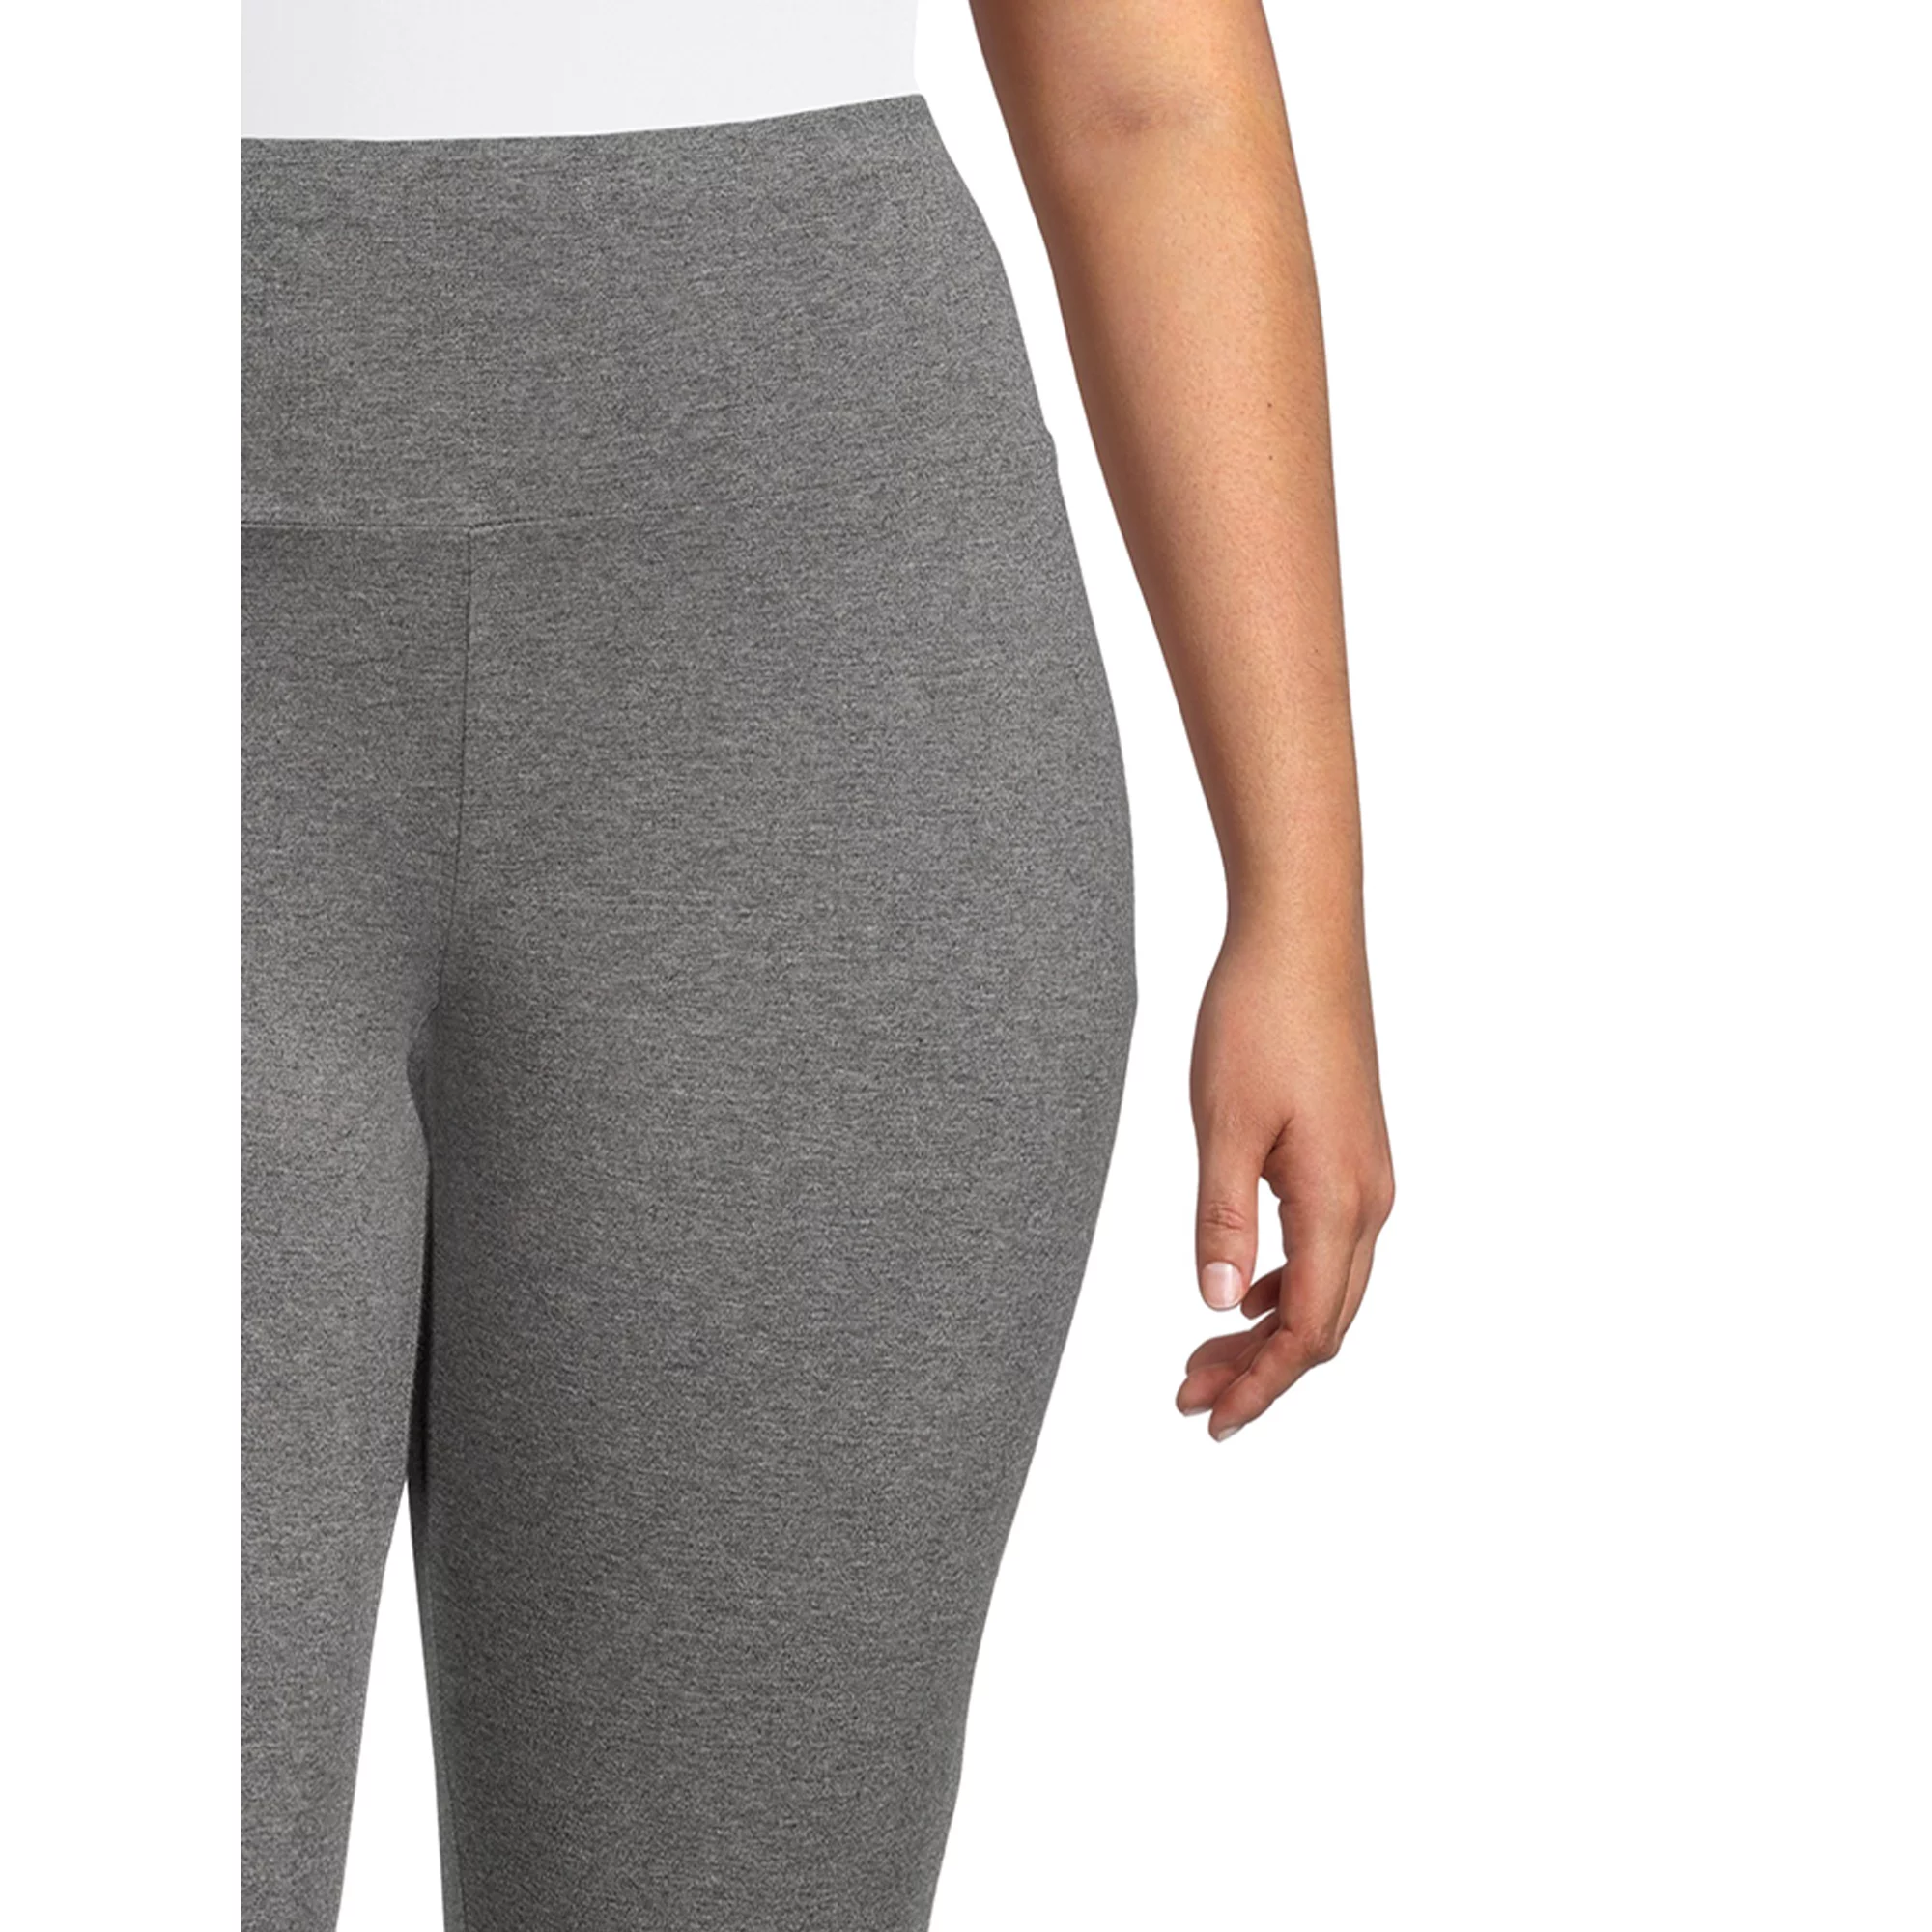 Terra & Sky Women's Plus Size Printed Capri Leggings, 2-Pack